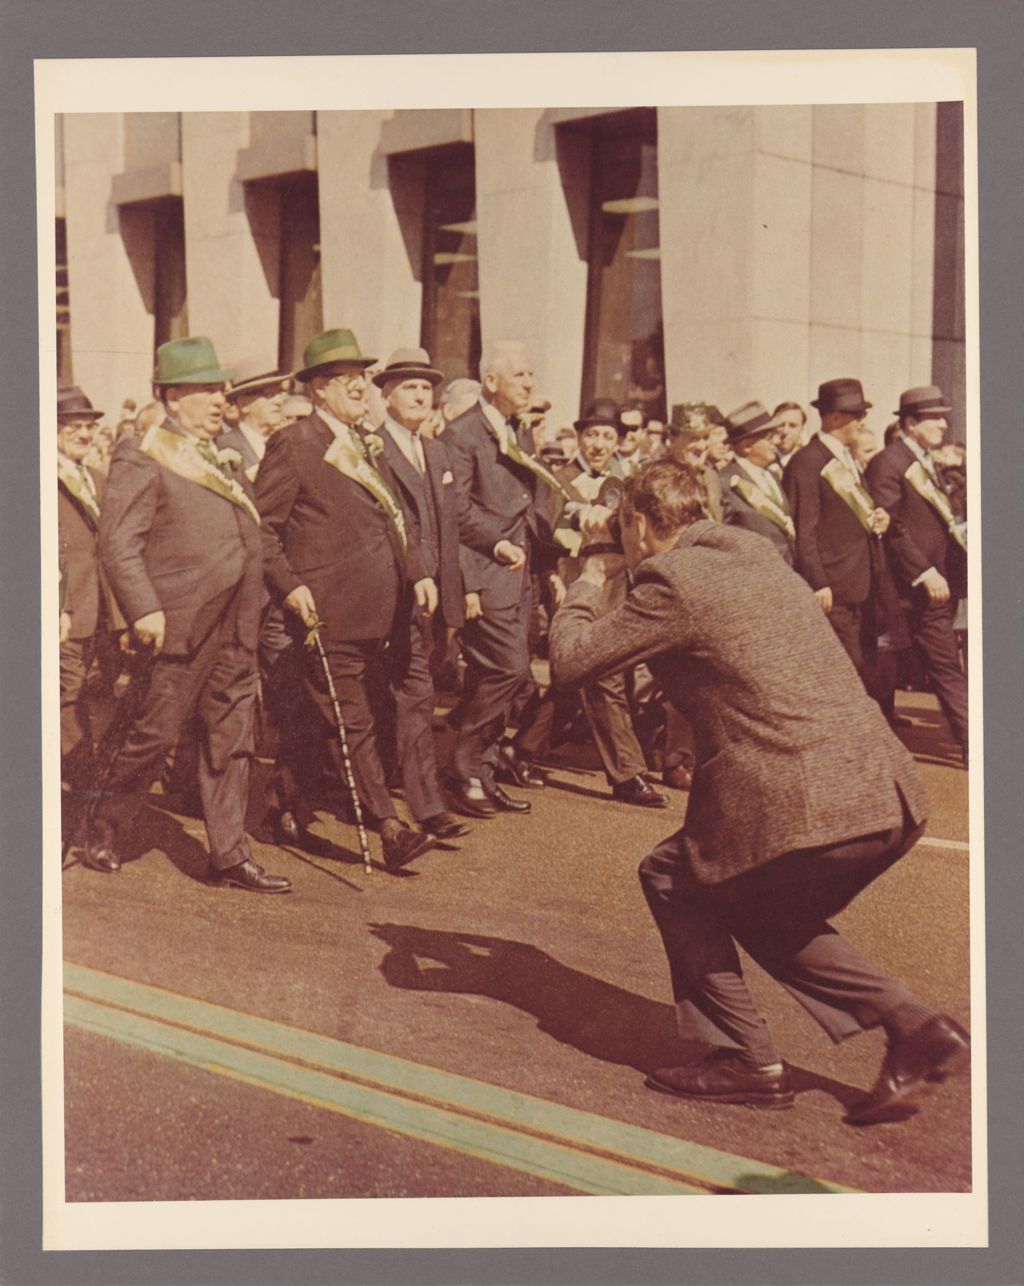 Richard J. Daley leading a St. Patrick's Day parade